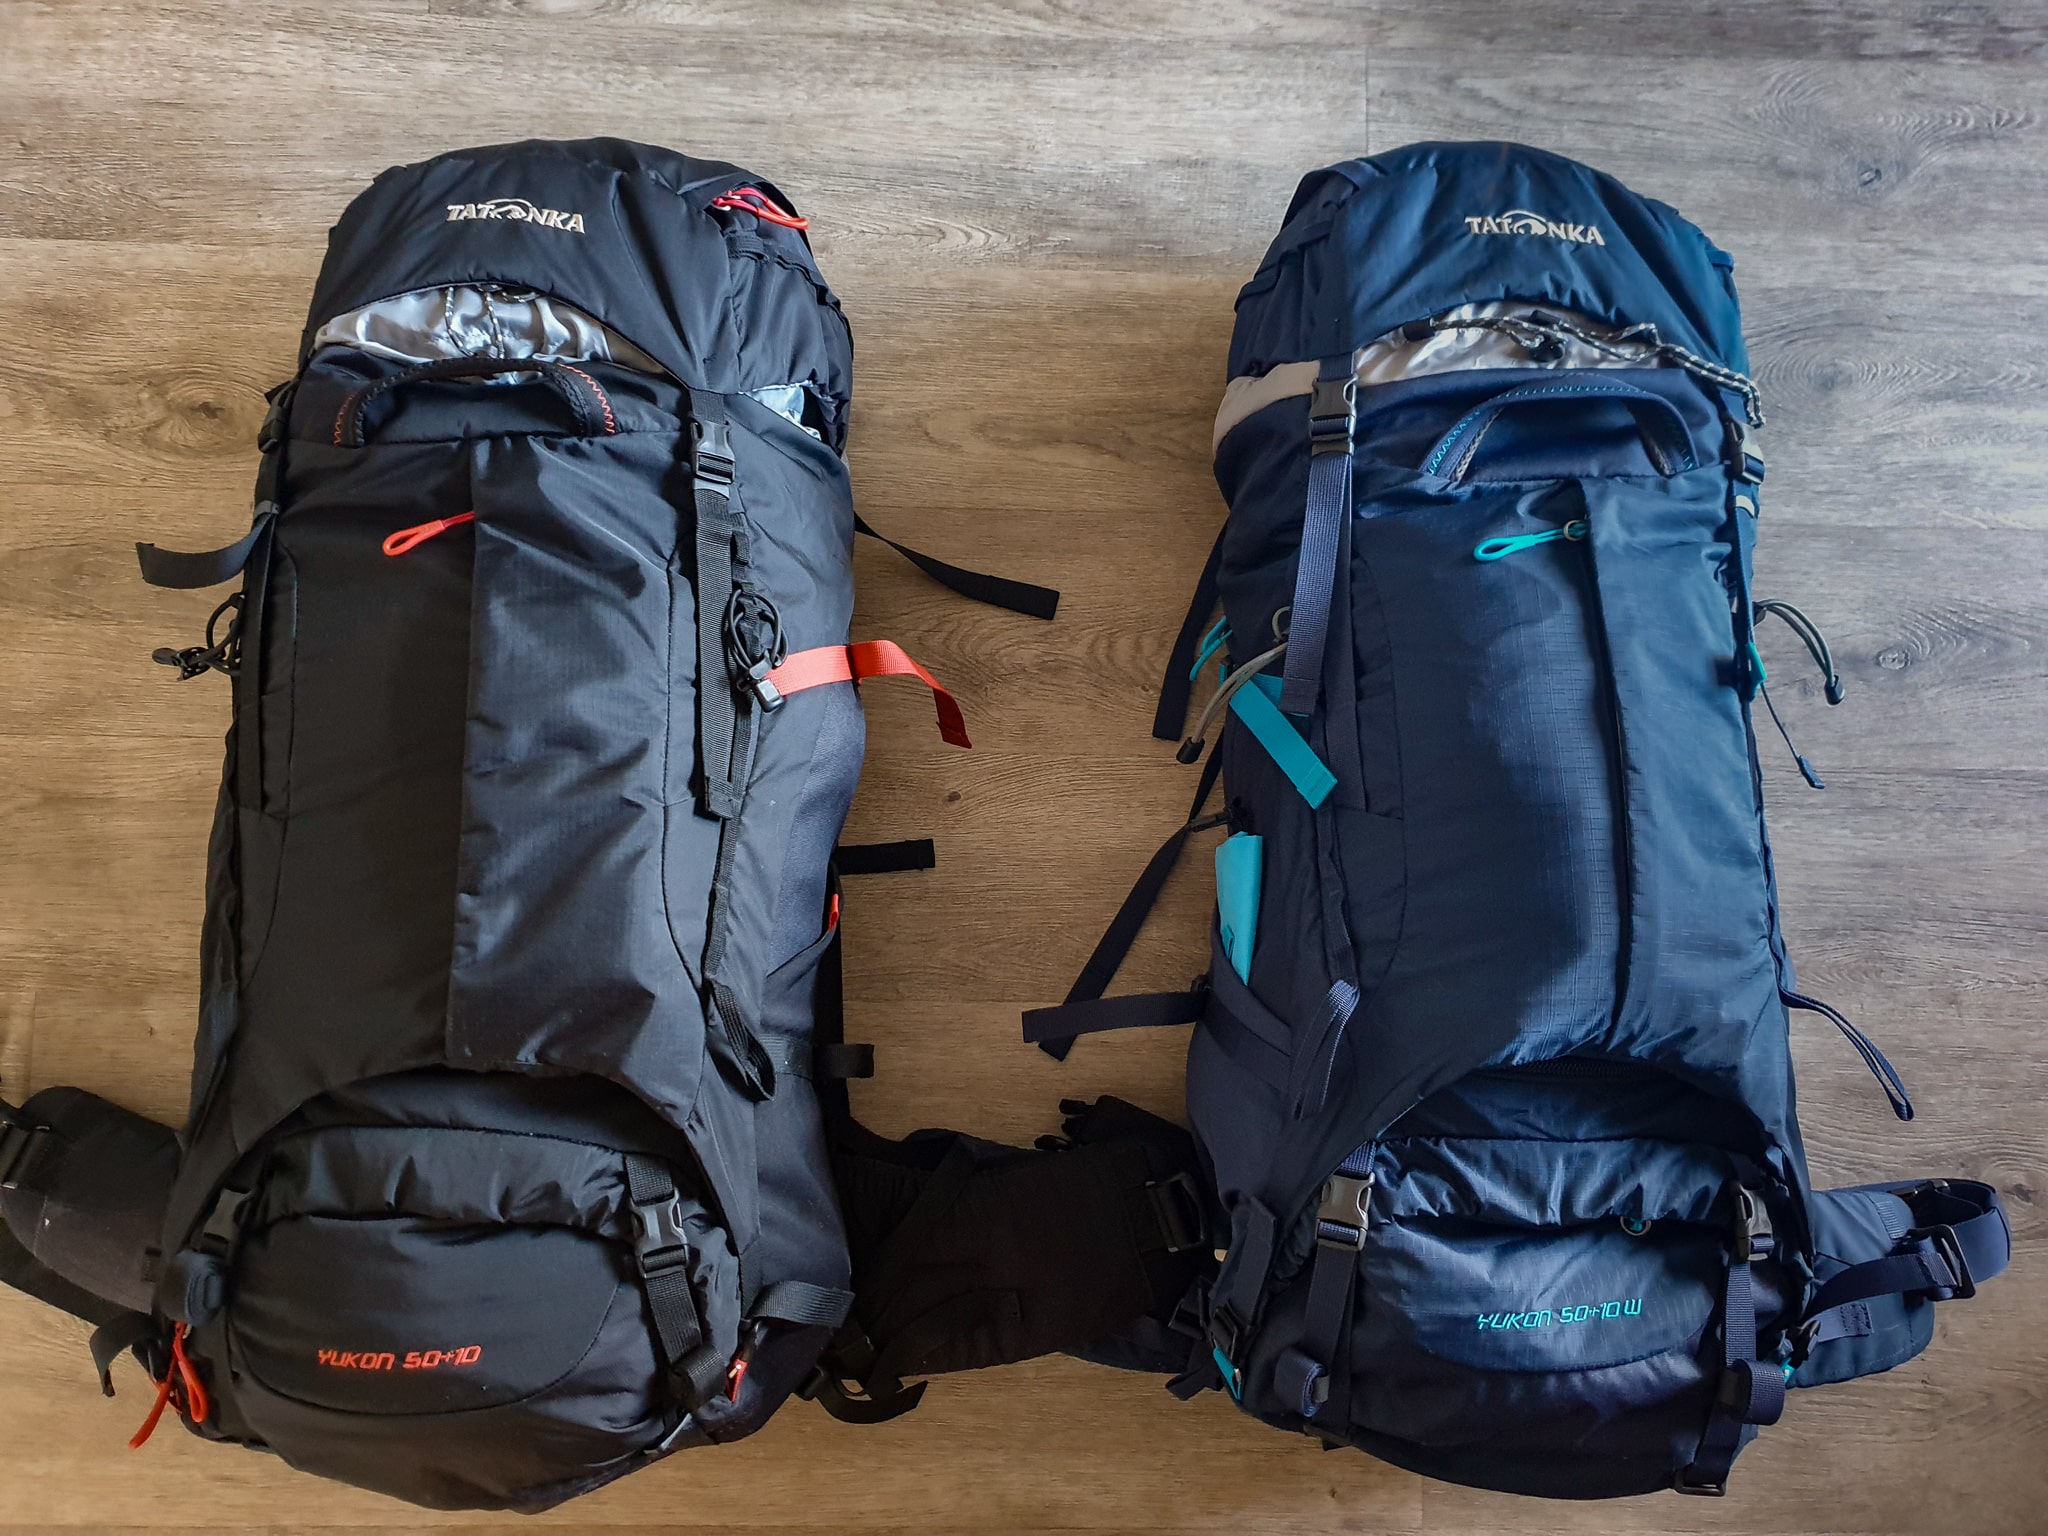 Backpack für Weltreise